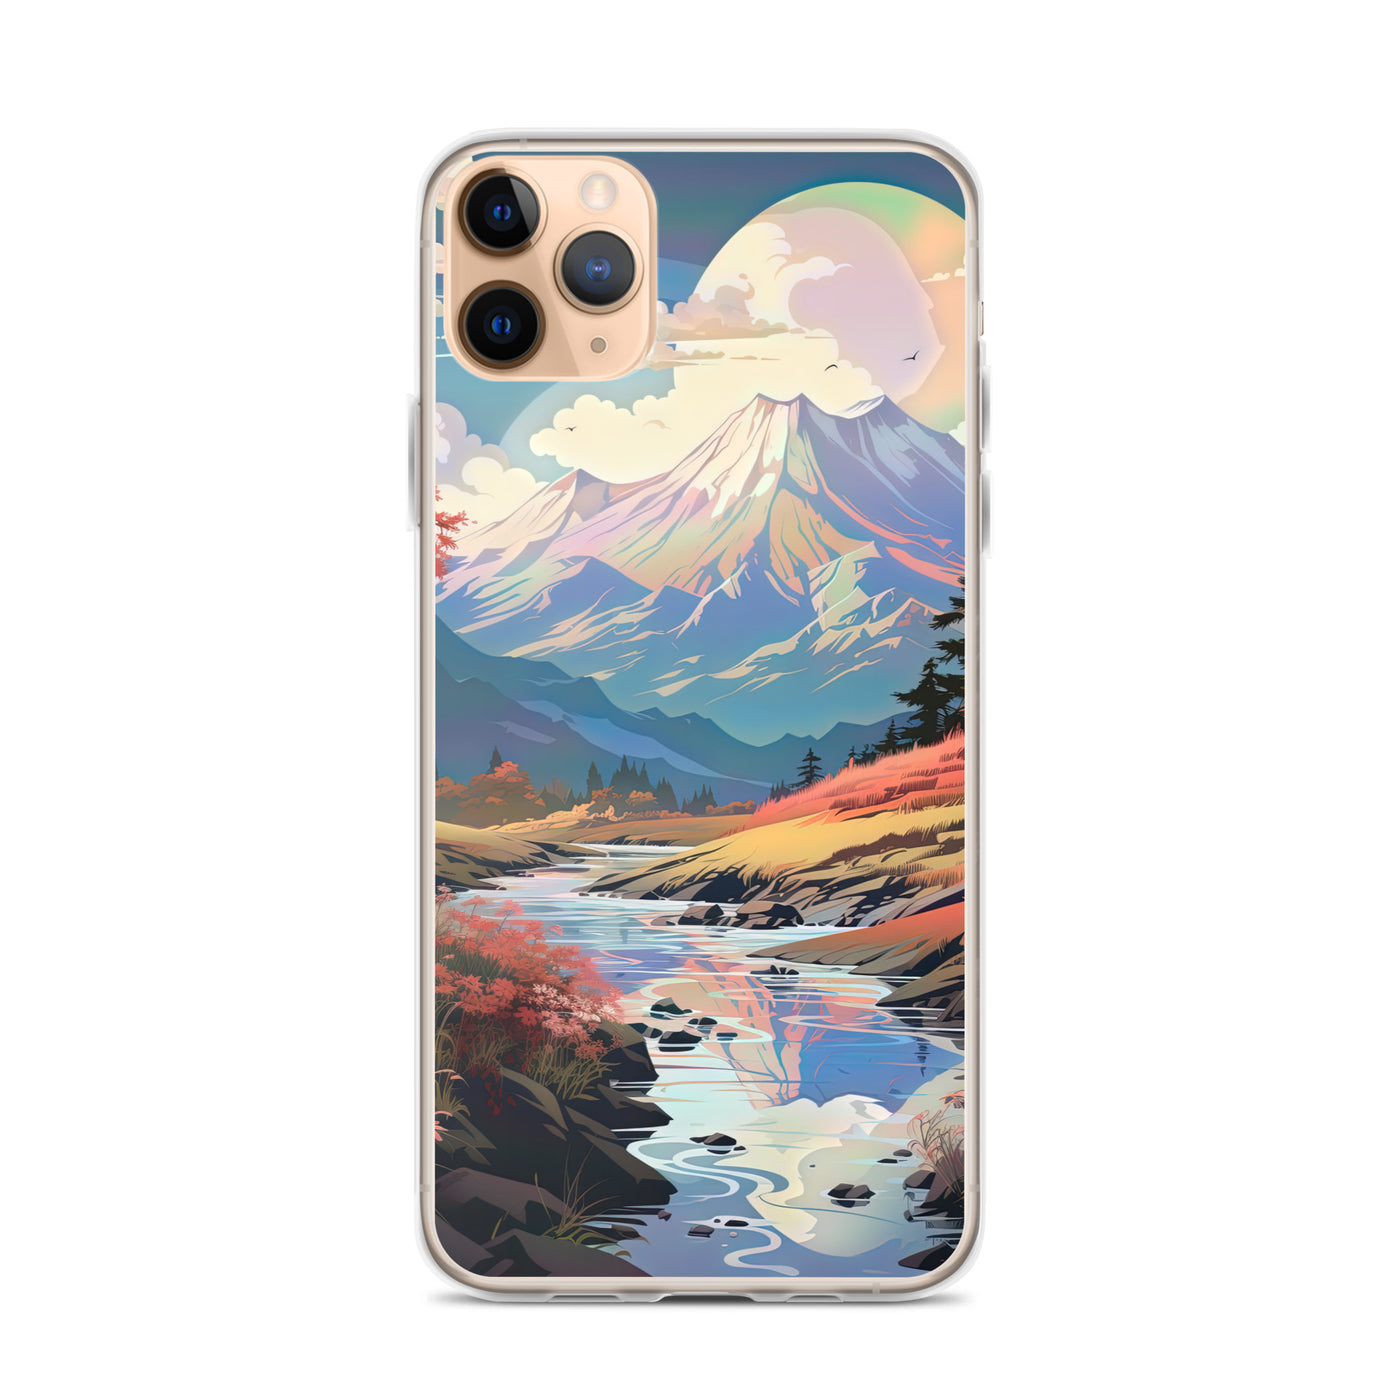 Berge. Fluss und Blumen - Malerei - iPhone Schutzhülle (durchsichtig) berge xxx iPhone 11 Pro Max